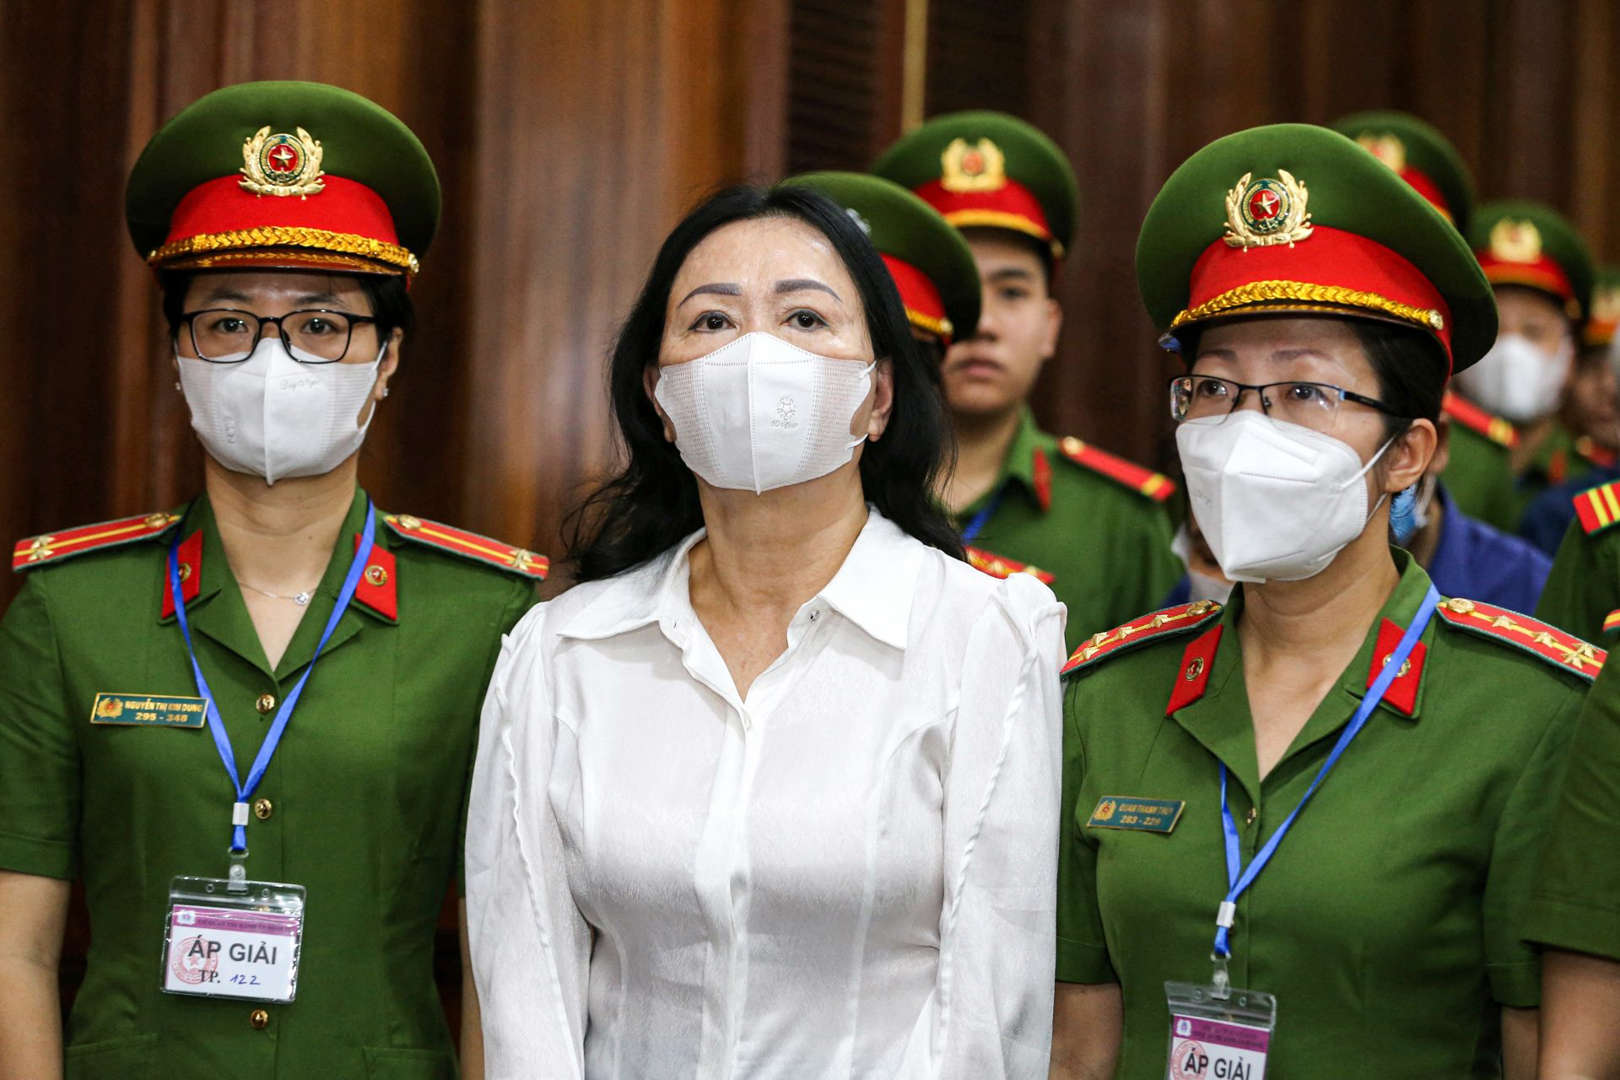 Scandale financier au Vietnam : La dirigeante d'un géant de l'immobilier condamnée à mort pour fraude massive